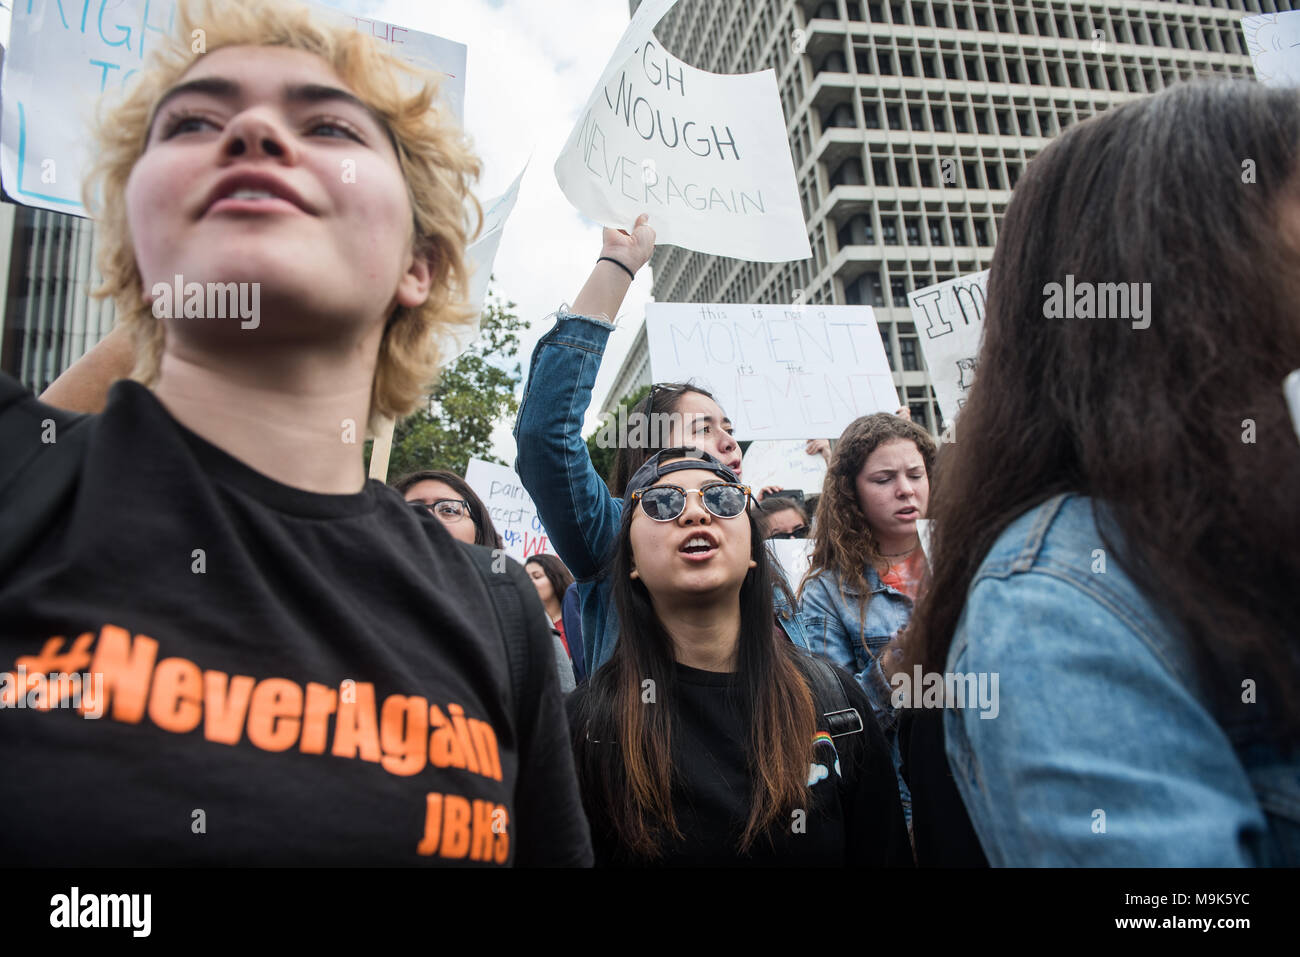 LOS ANGELES - MÄRZ 24, 2018: März für unser Leben ist eine Bewegung von Studierenden gewidmet - LED-Aktivismus um Beendigung von Waffengewalt und die massenerschießungen. Stockfoto